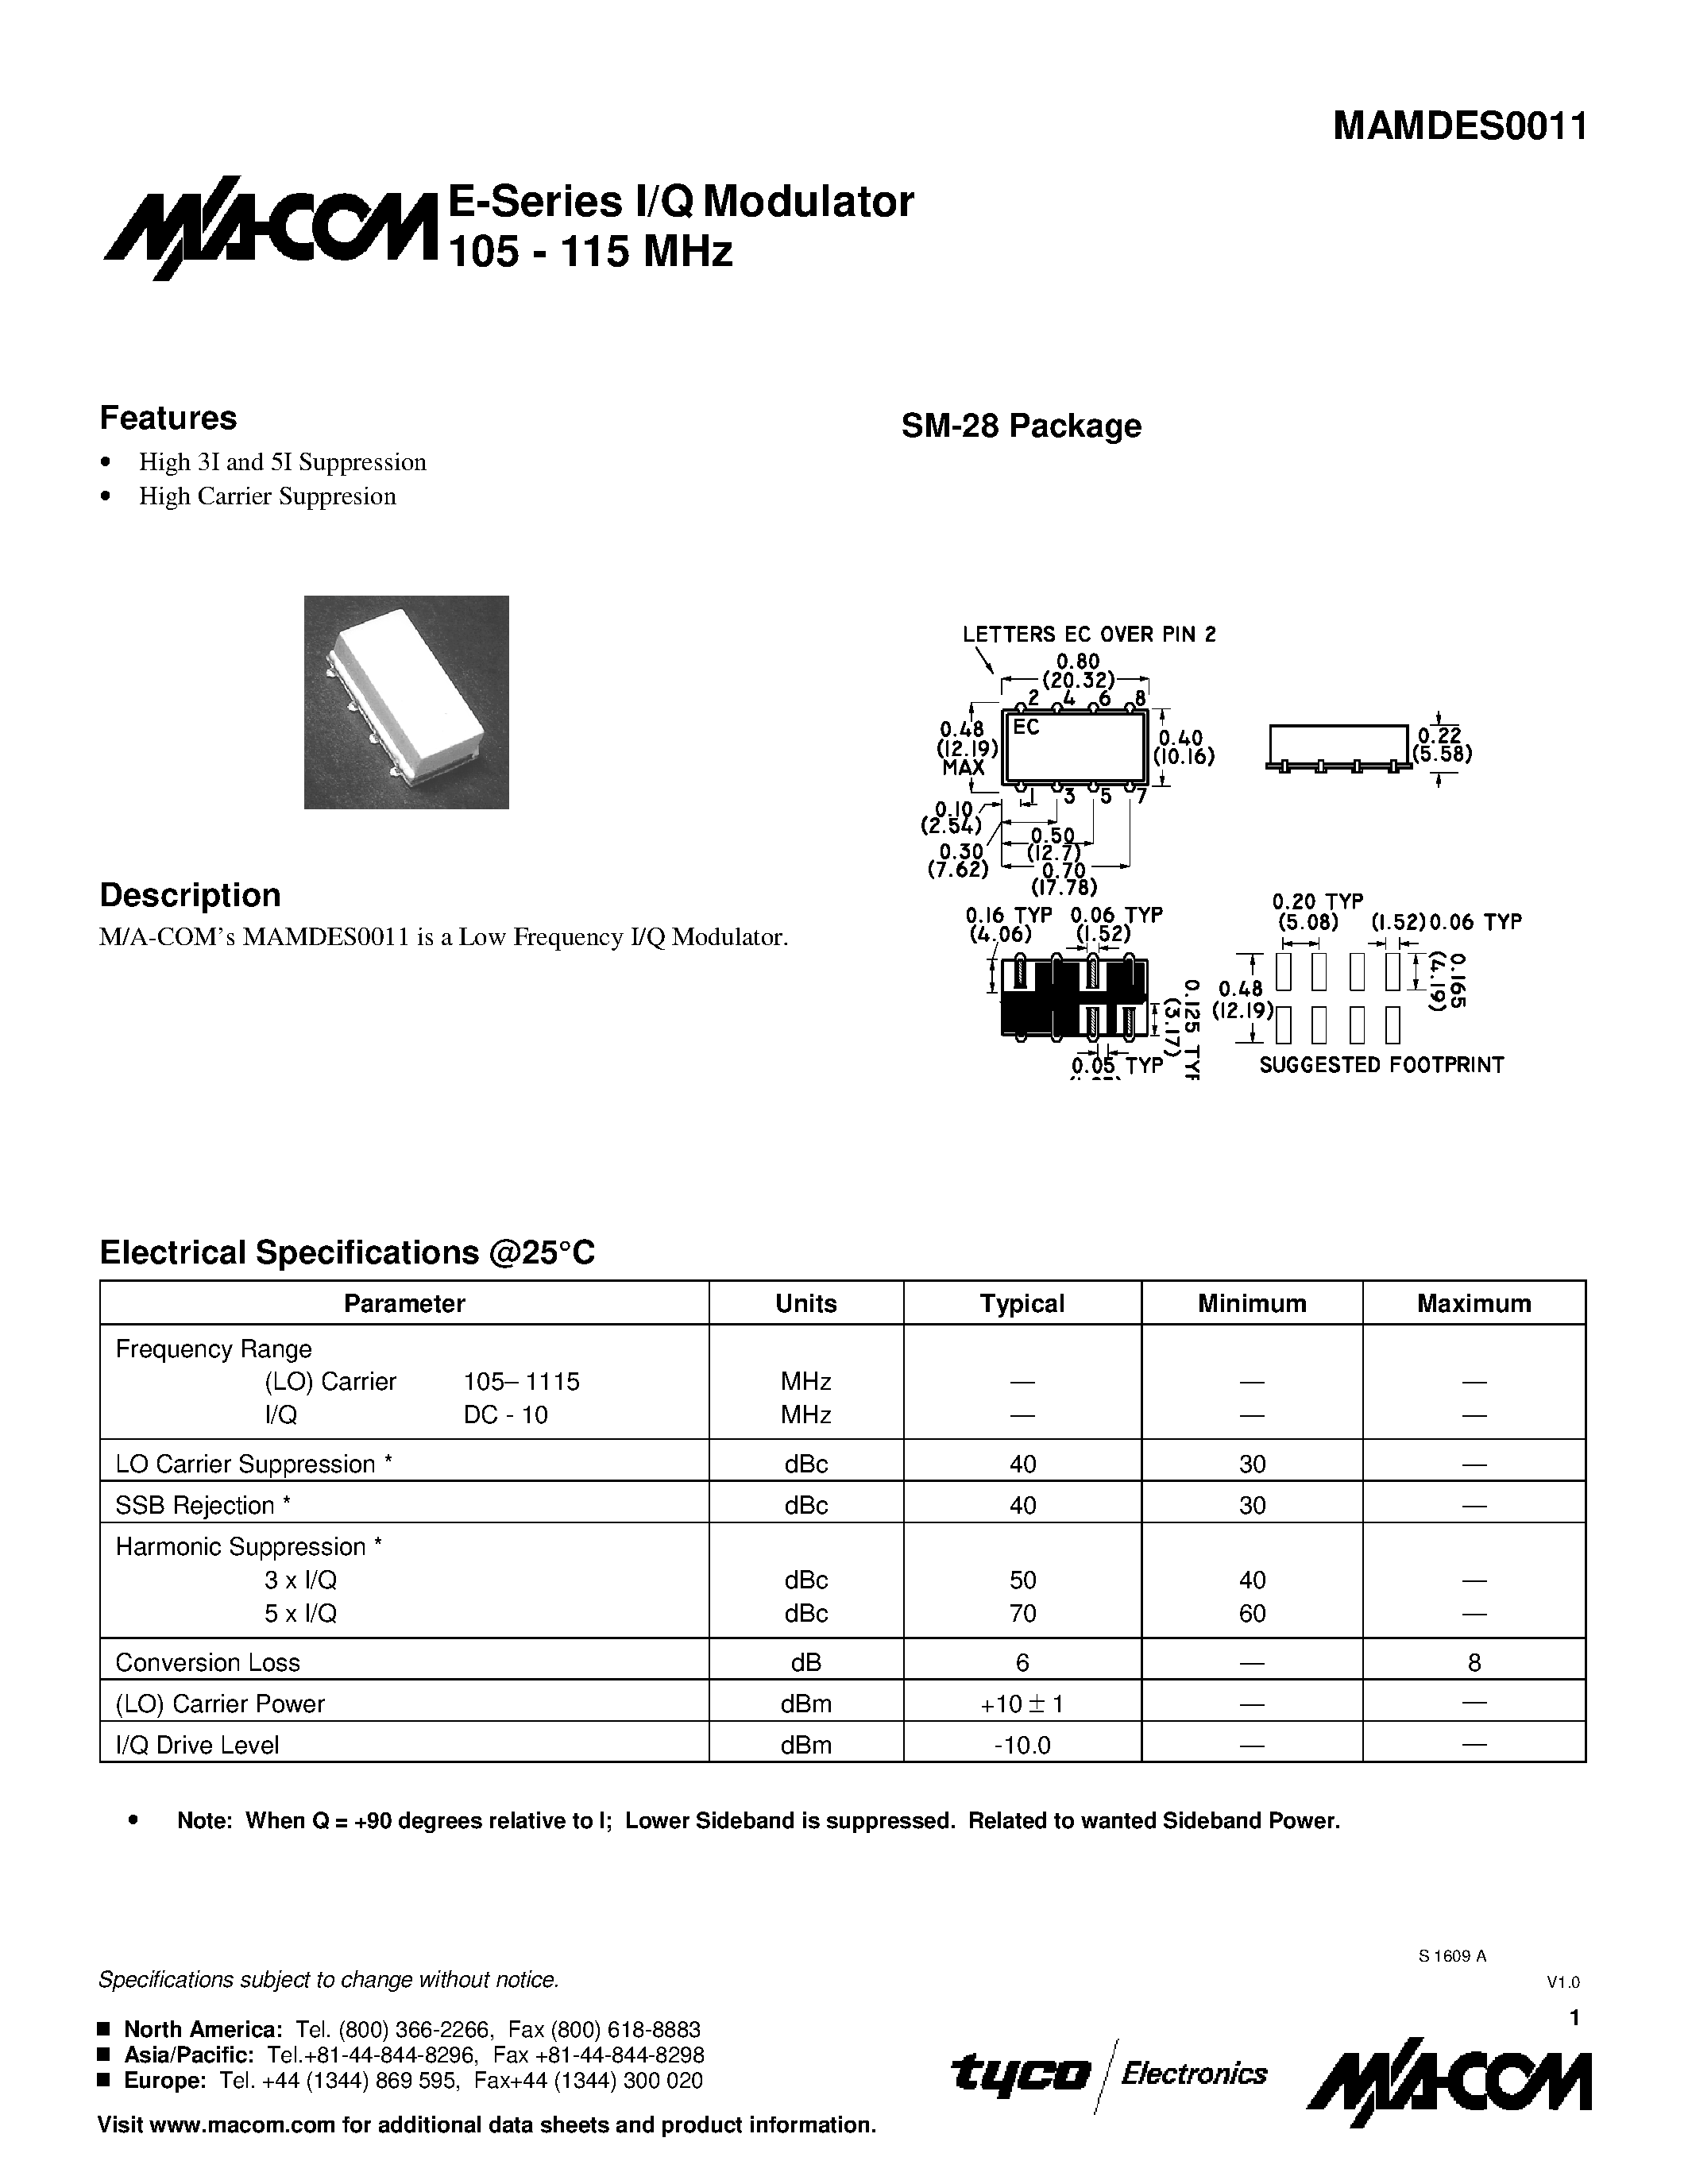 Datasheet MAMDES0011 - E-Series I/Q Modulator 105 - 115 MHz page 1